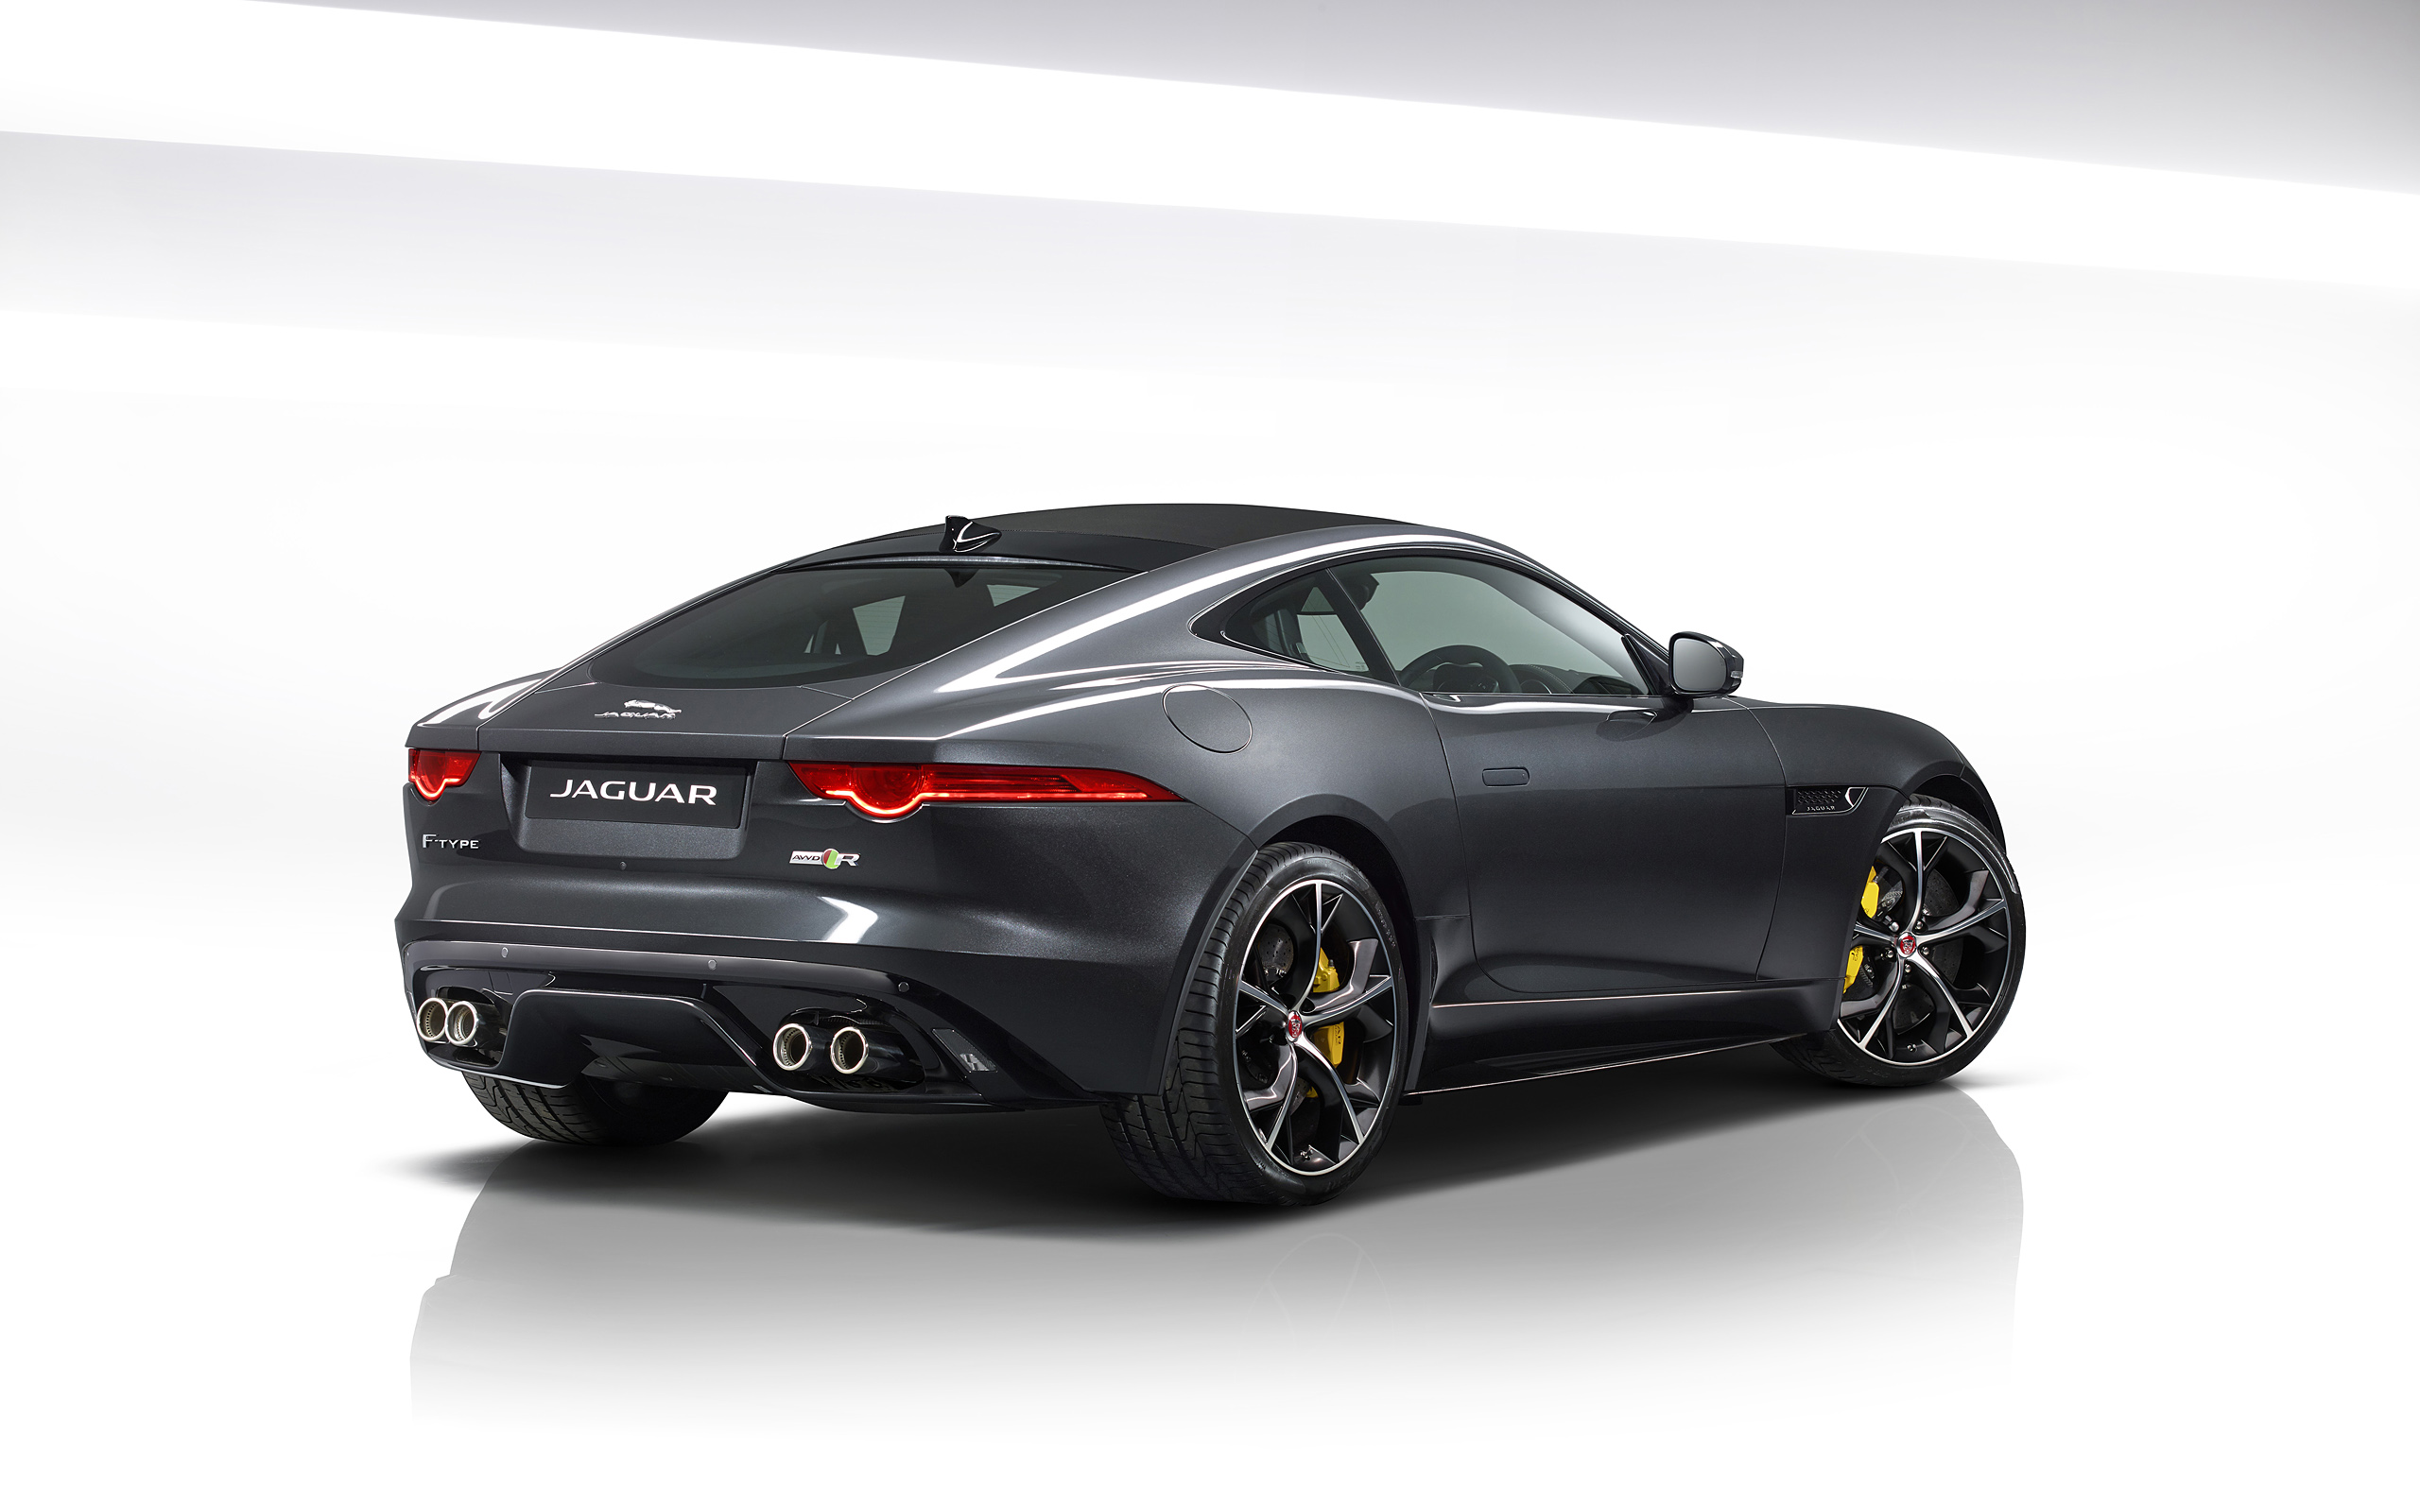  2016 Jaguar F-Type Wallpaper.